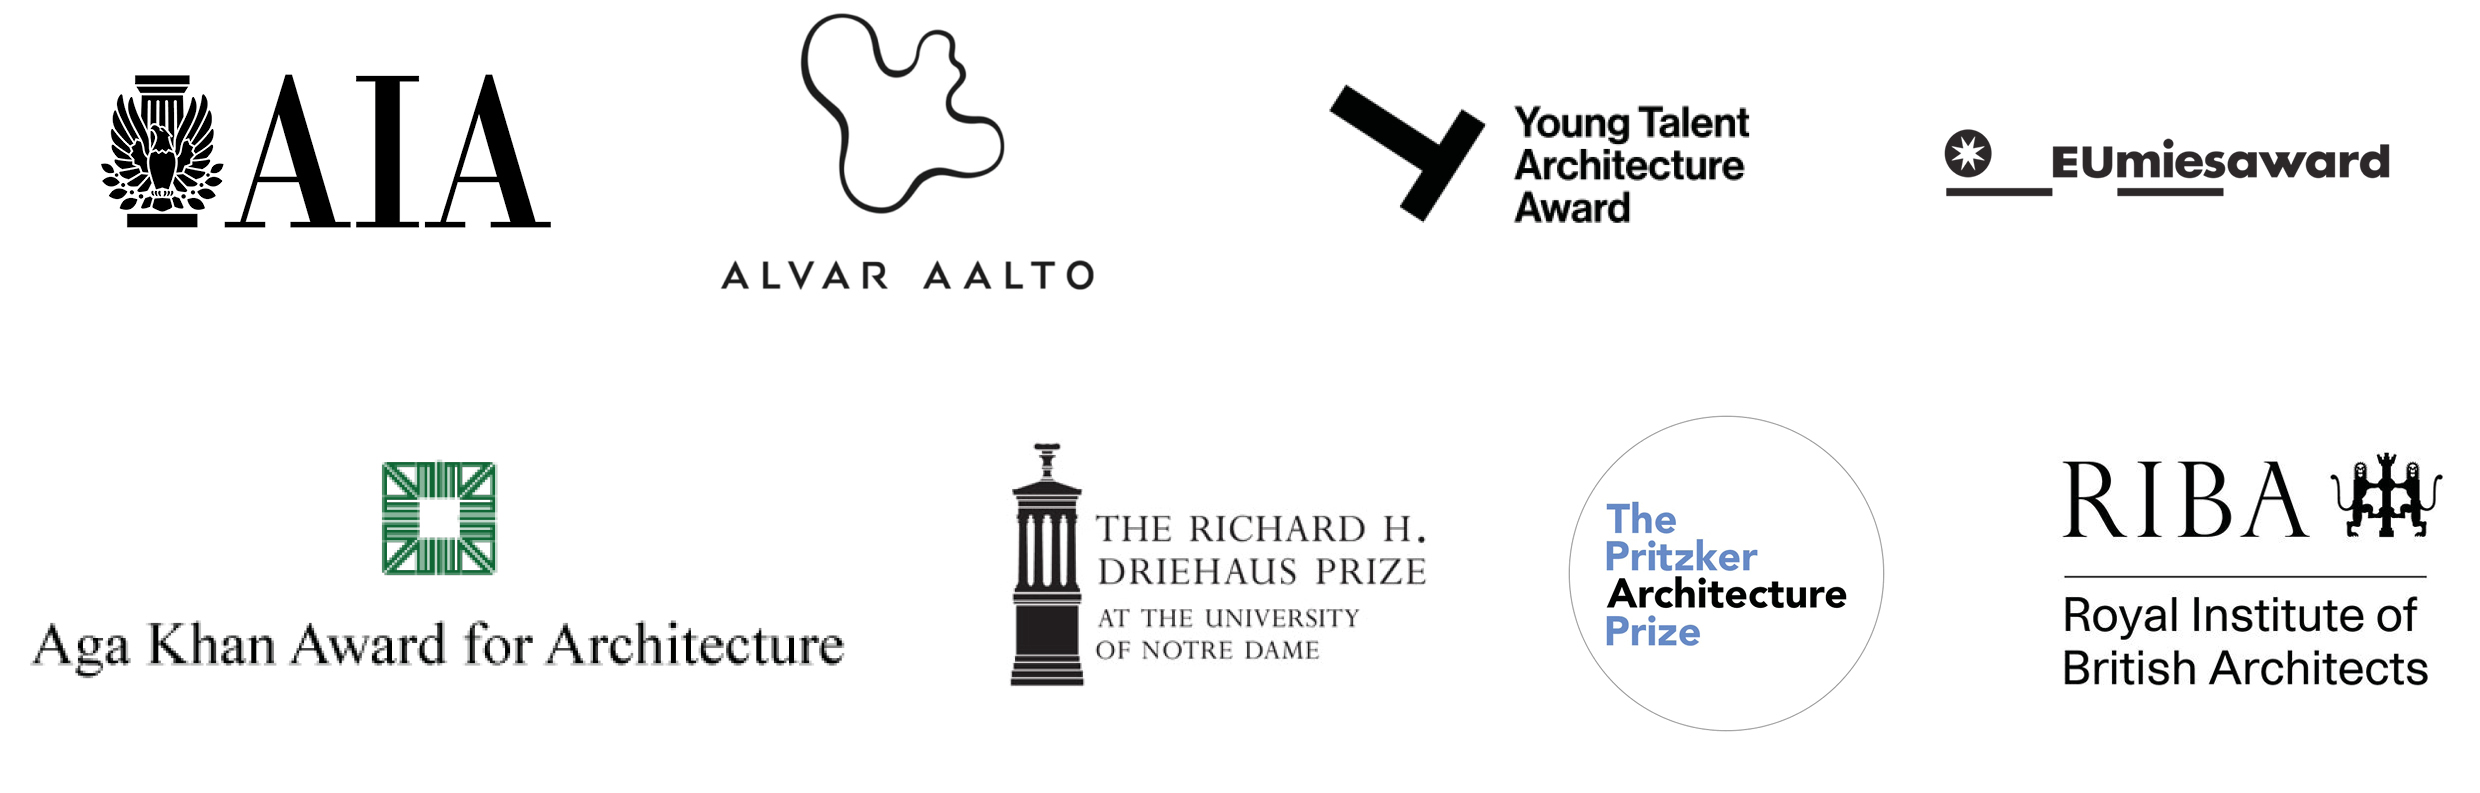 Imagen de los premios más prestigiosos de arquitectura a nivel internacional y los arquitectos ganadores - Gradhermetic